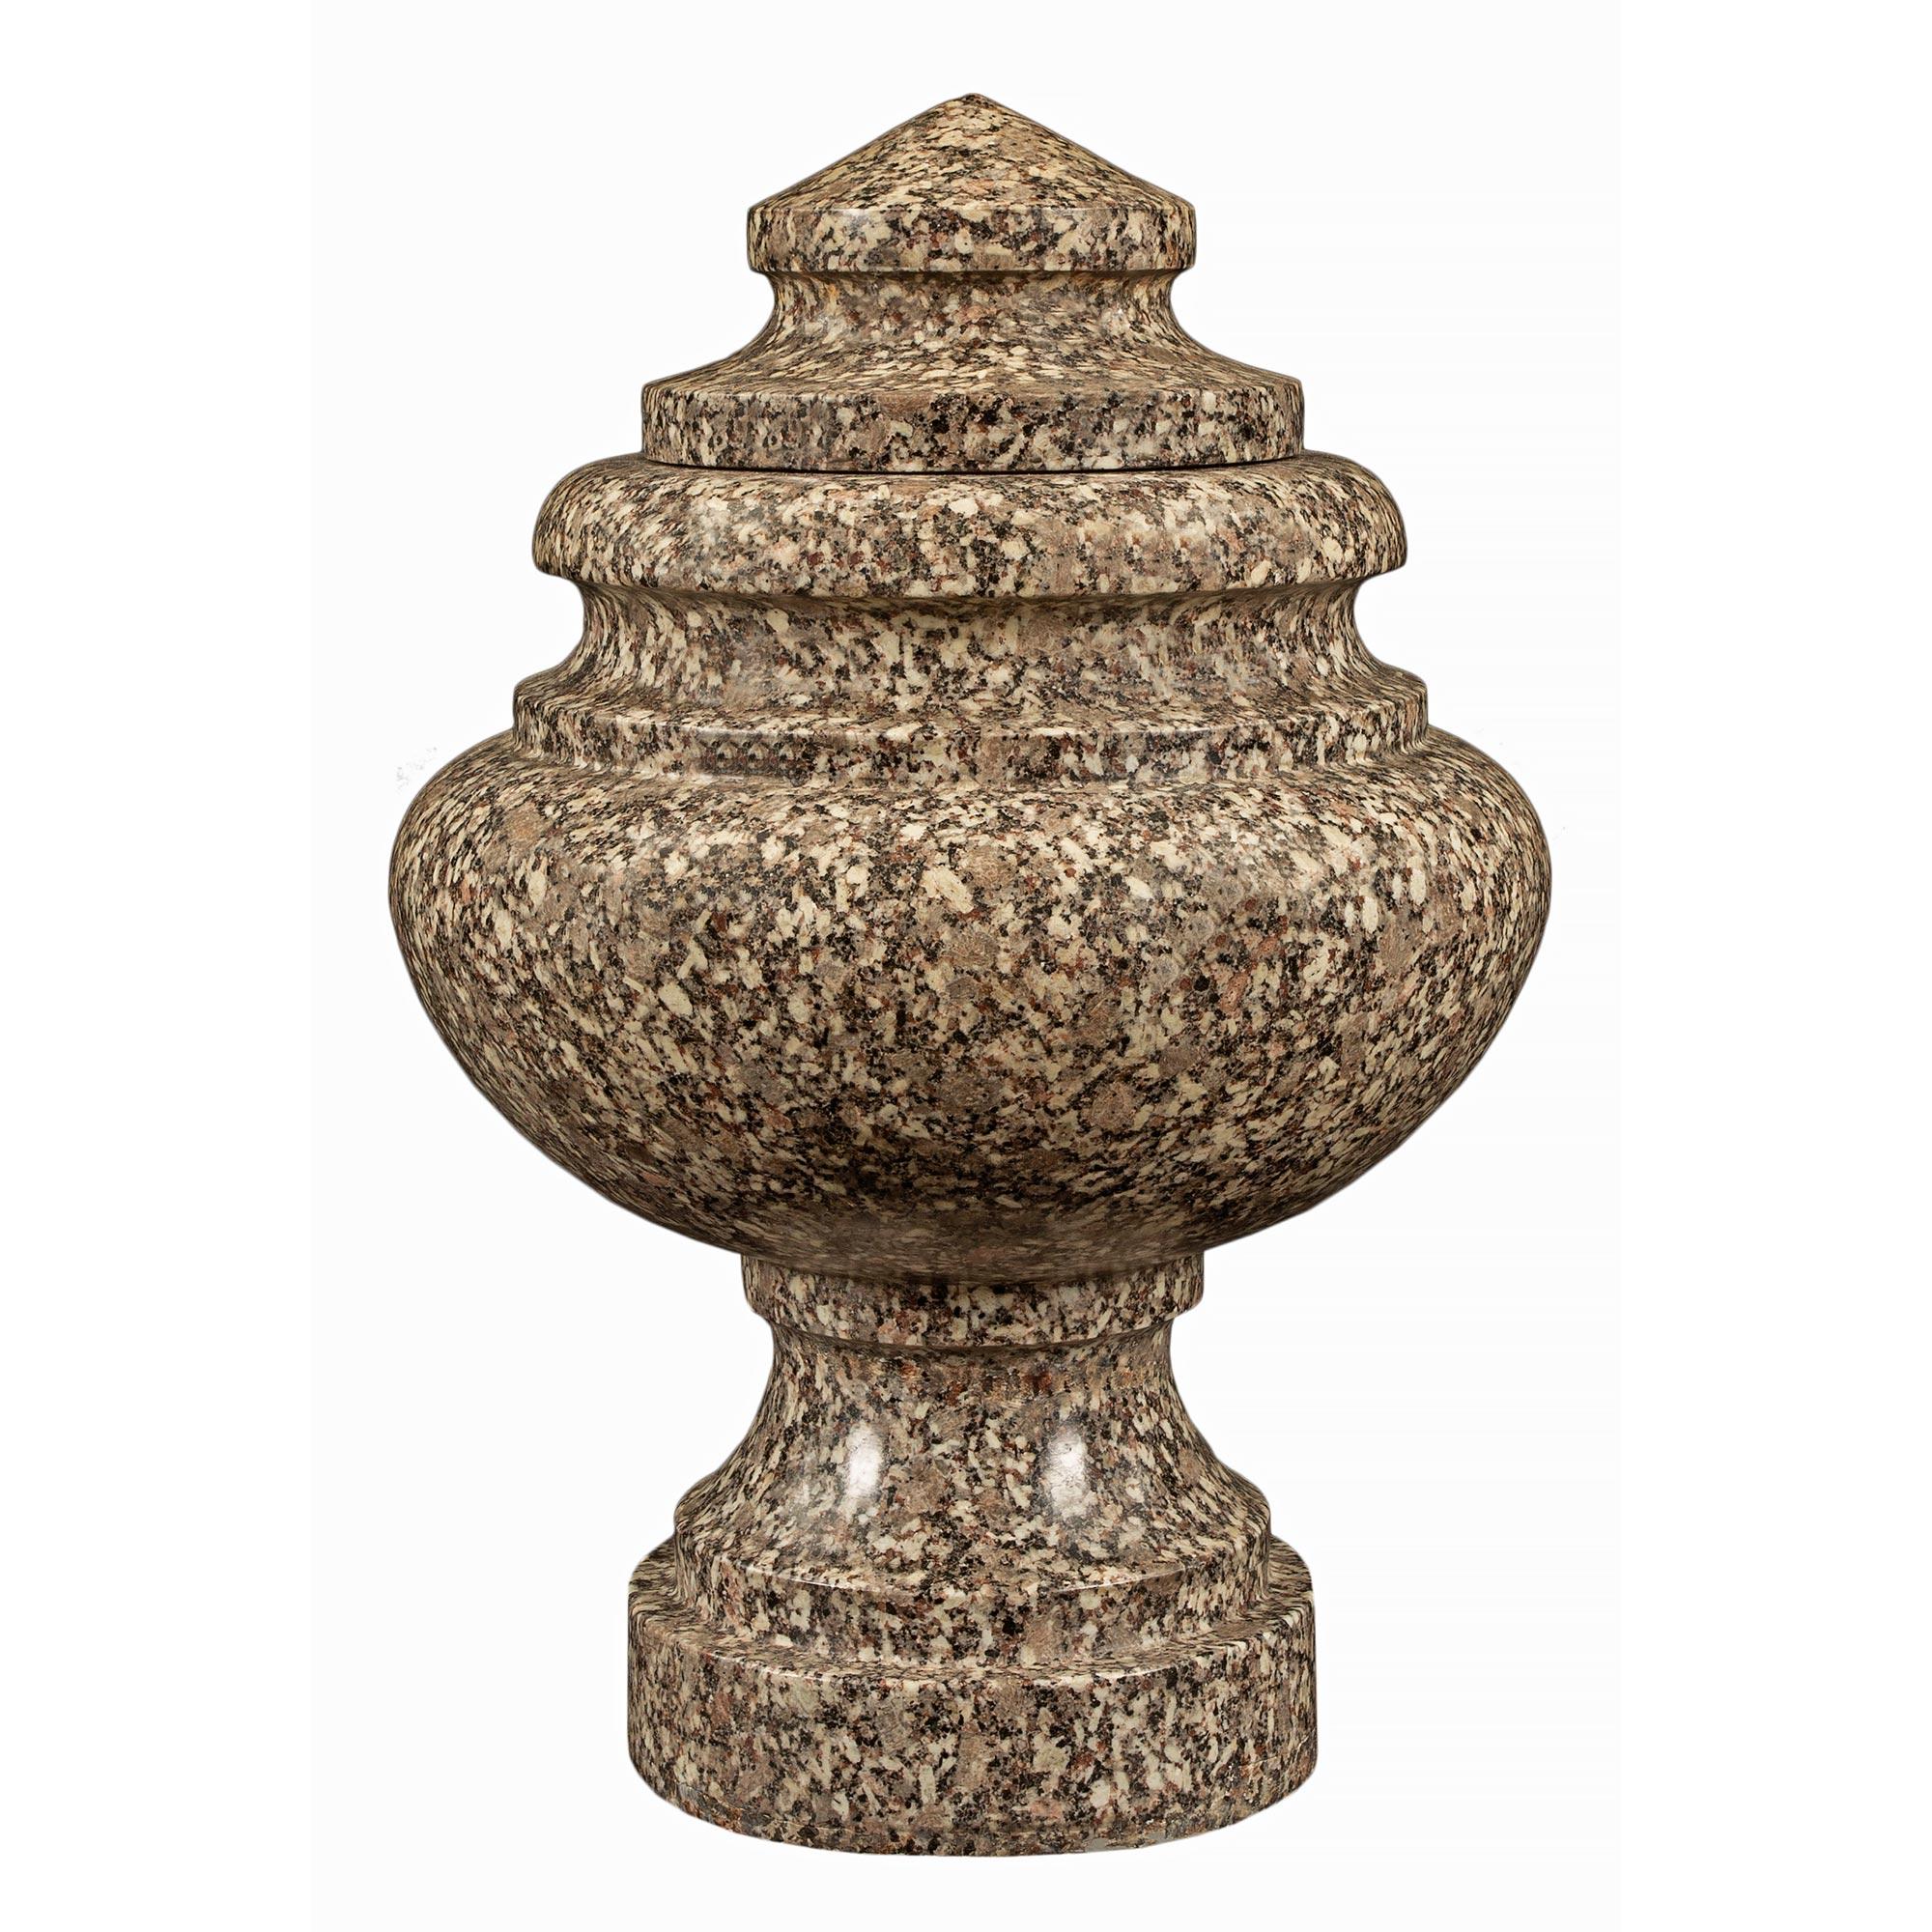 Une superbe paire d'urnes à couvercle en granit de style néo-classique italien du 19e siècle. Chaque urne est surélevée par une base circulaire mouchetée et un piédestal à socle. Le corps présente une forme élégante et un bord moucheté ; le